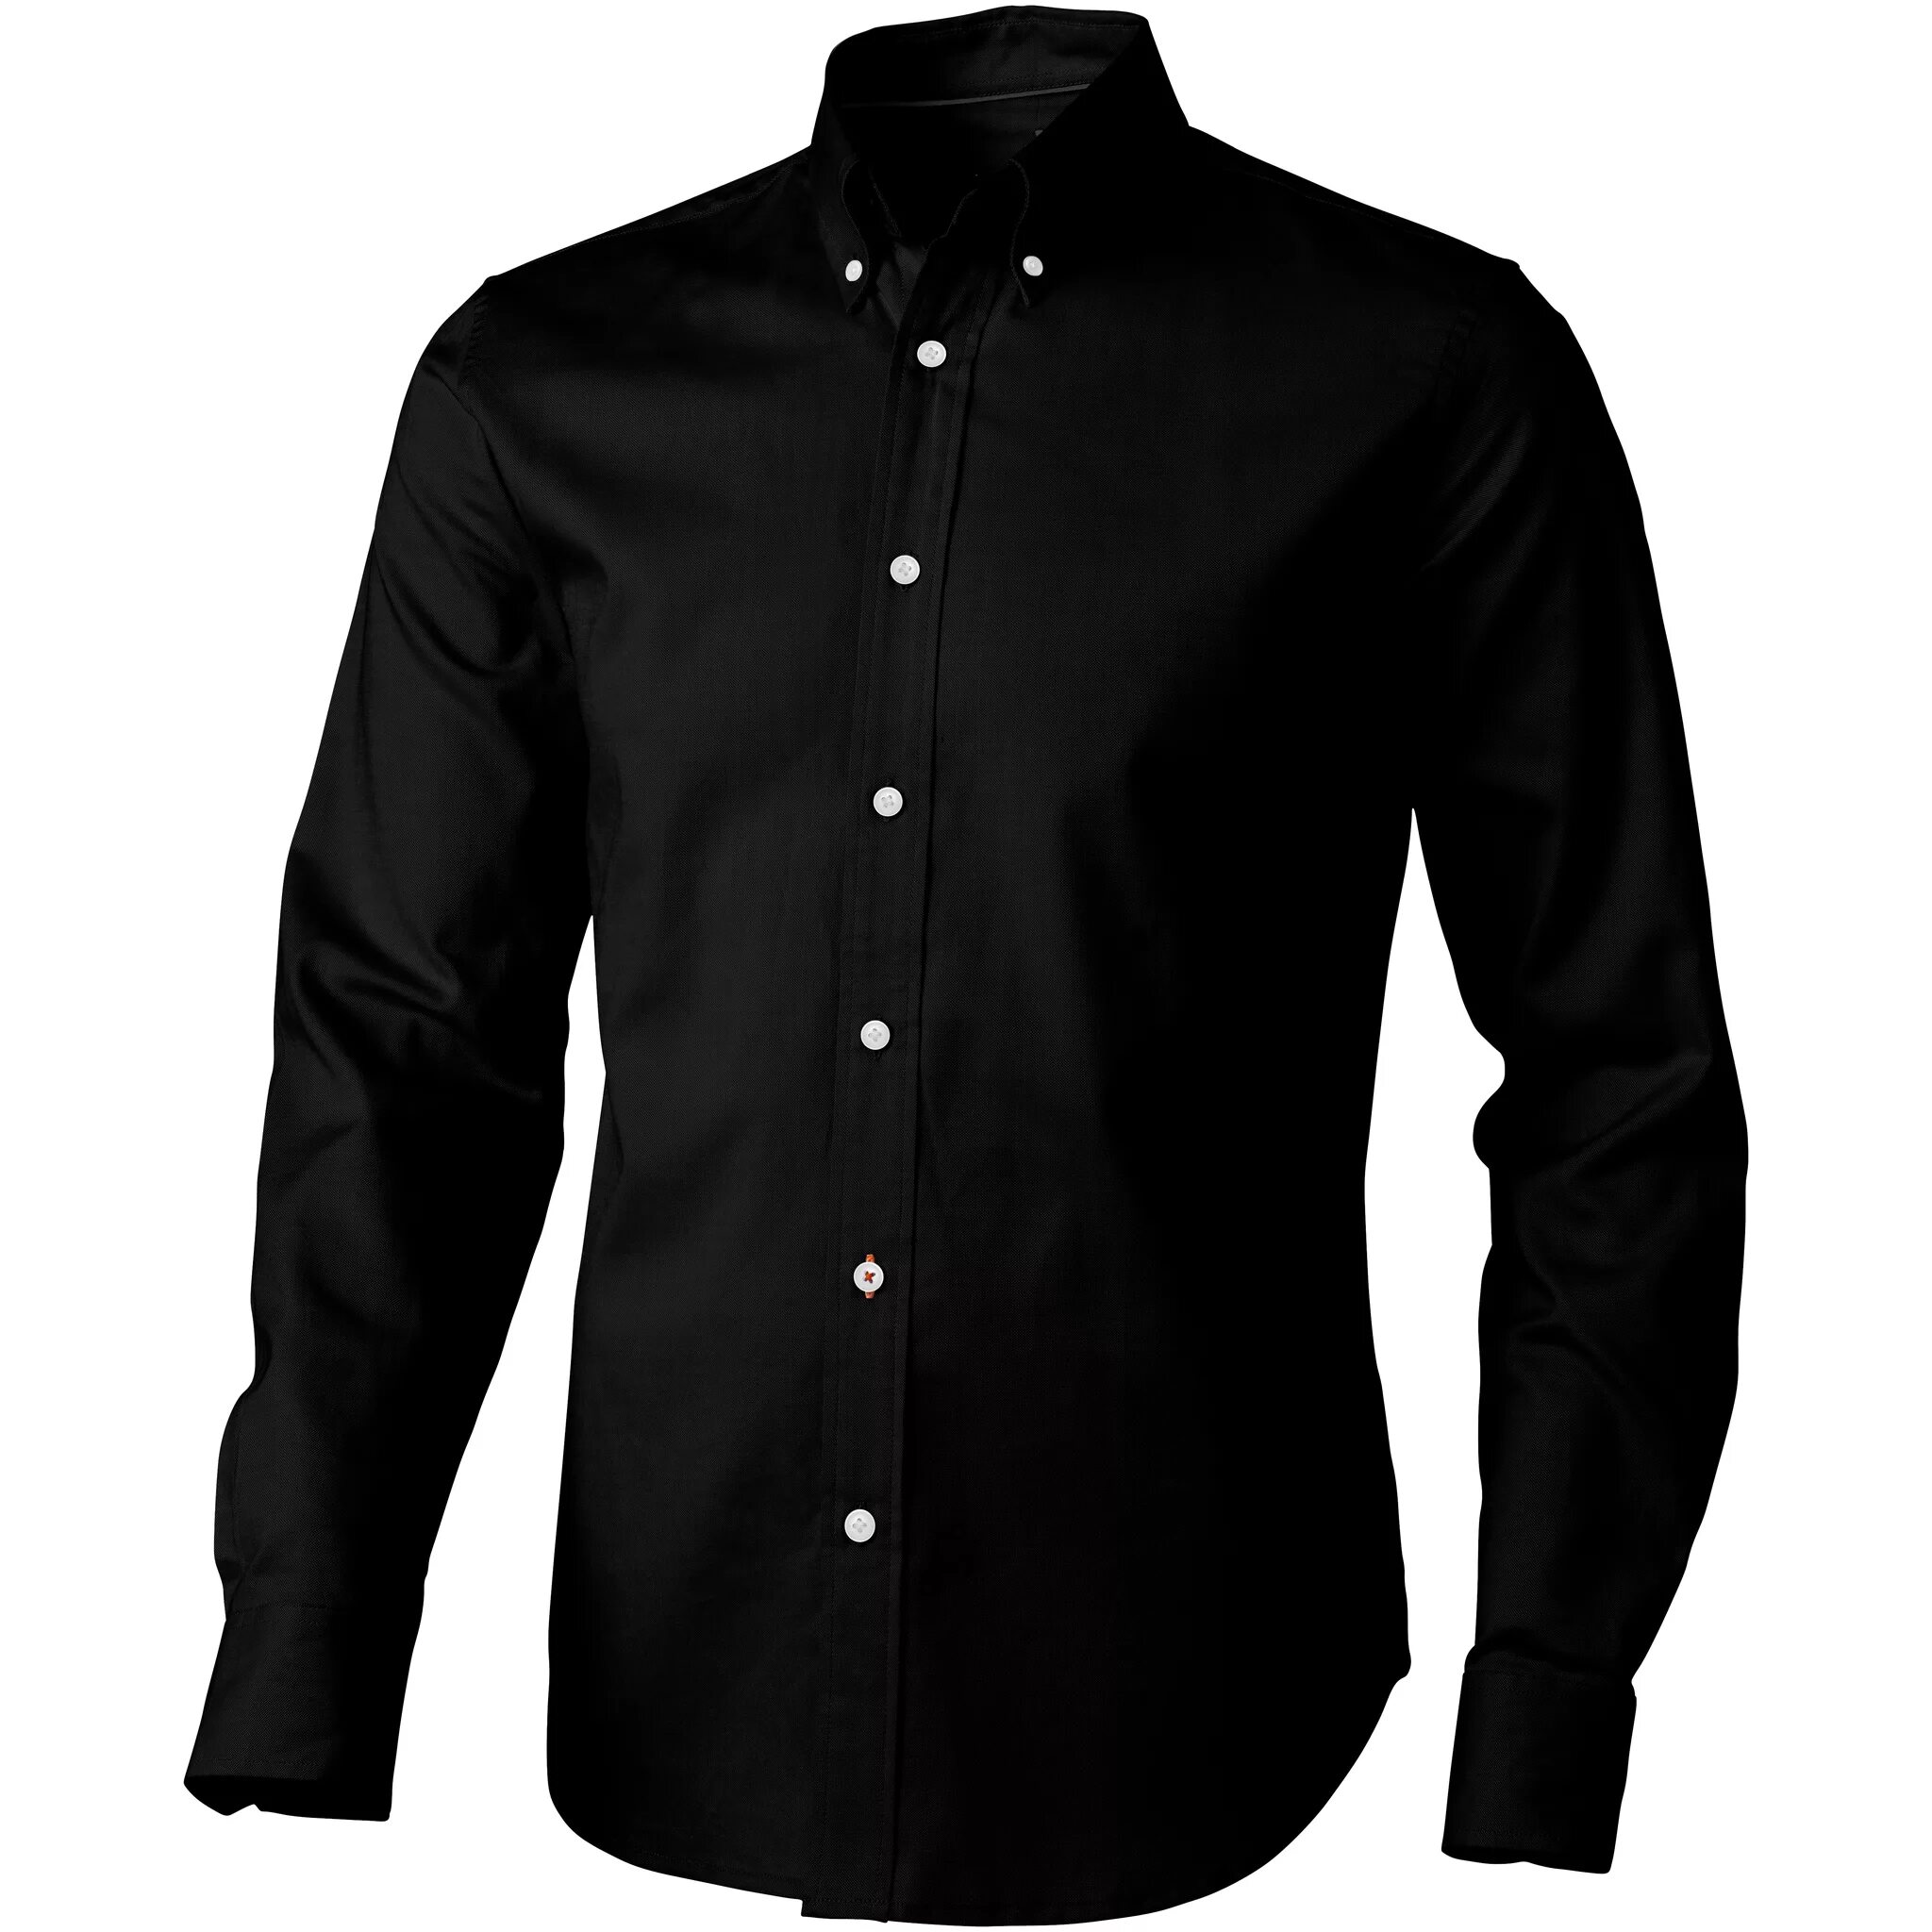 Elevate Hamilton рубашка. Черная рубашка. Чёрная рубашка мужская с длинным рукавом. Красивые рубашки для мужчин.